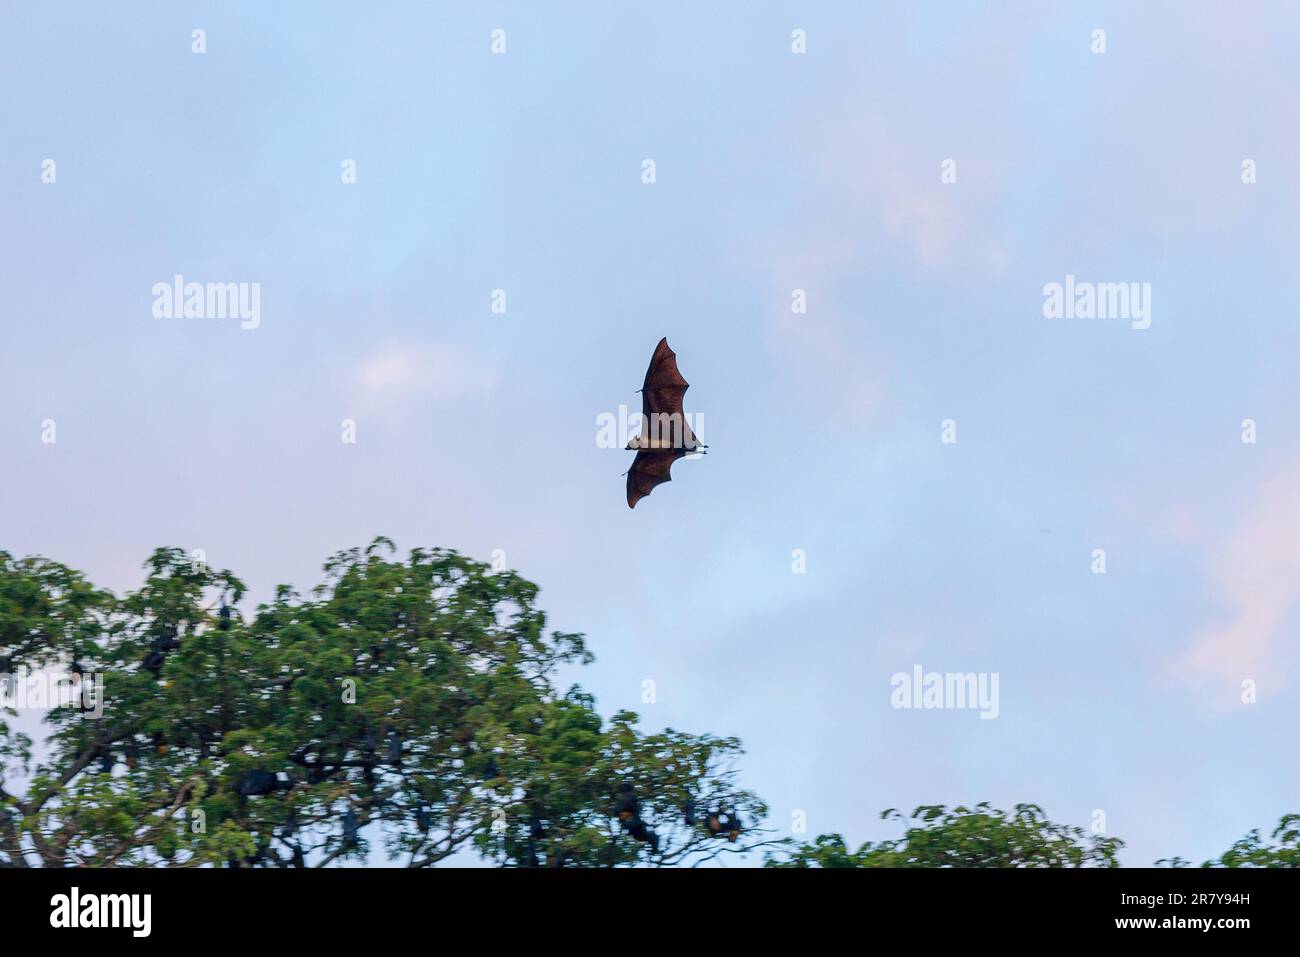 Le grand renard volant vole autour des arbres de pluie de la petite ville de Tissamaharama dans la soirée. Toute la journée, beaucoup de chauves-souris pendent dans la grande Banque D'Images